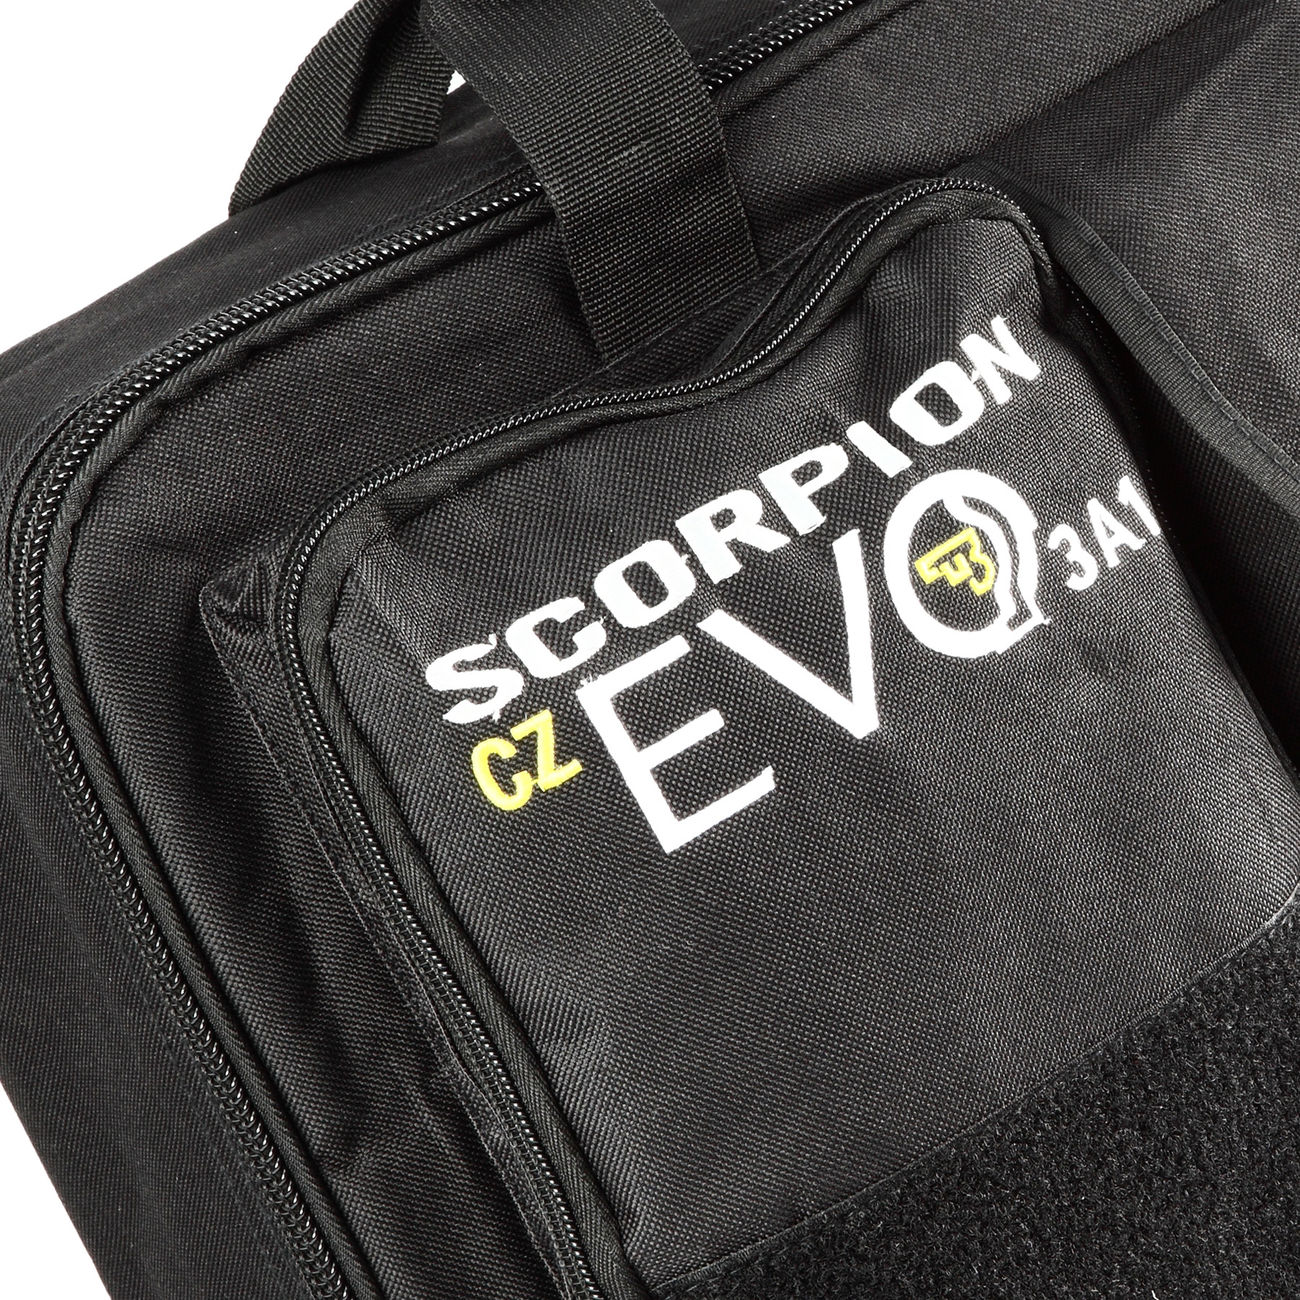 ASG CZ Scorpion EVO 3 A1 Waffentasche schwarz Bild 1